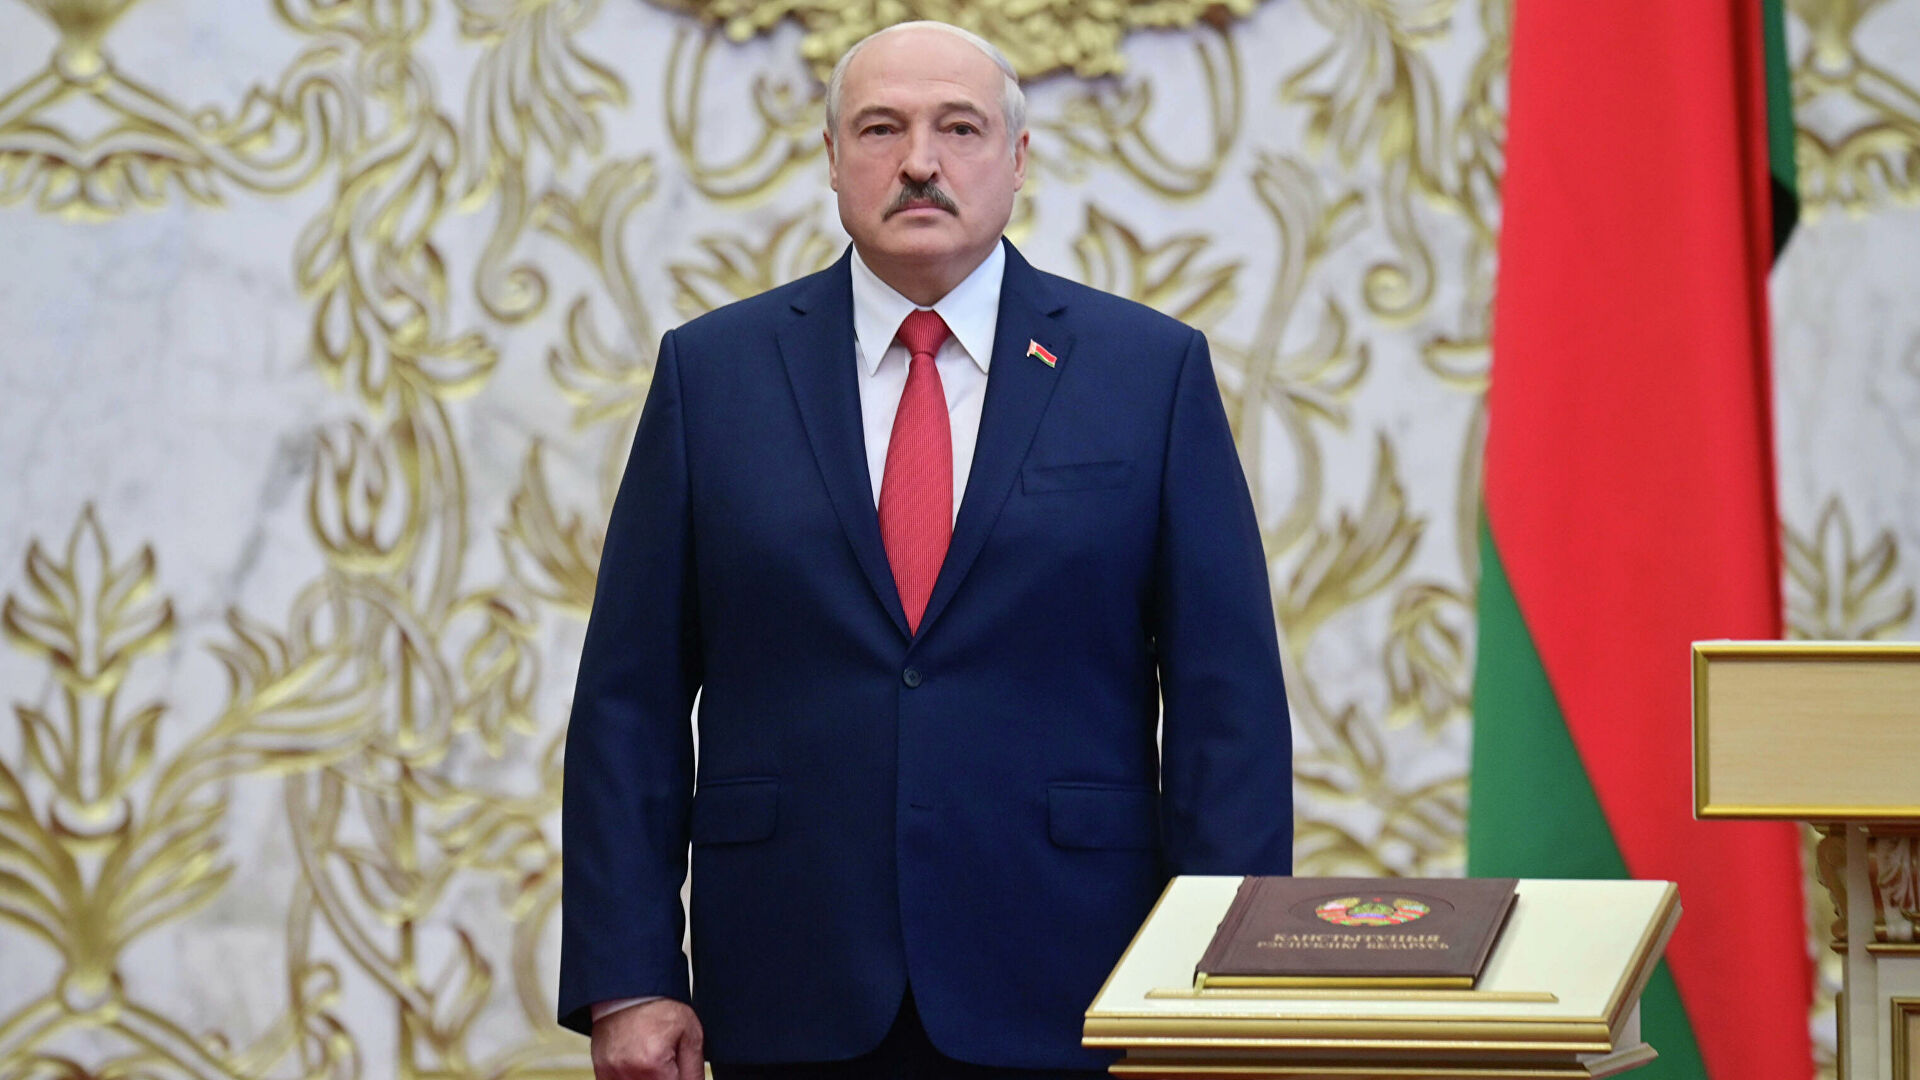  Великобритания и Канада ввели санкции против Лукашенко, его сына и белорусских силовиков